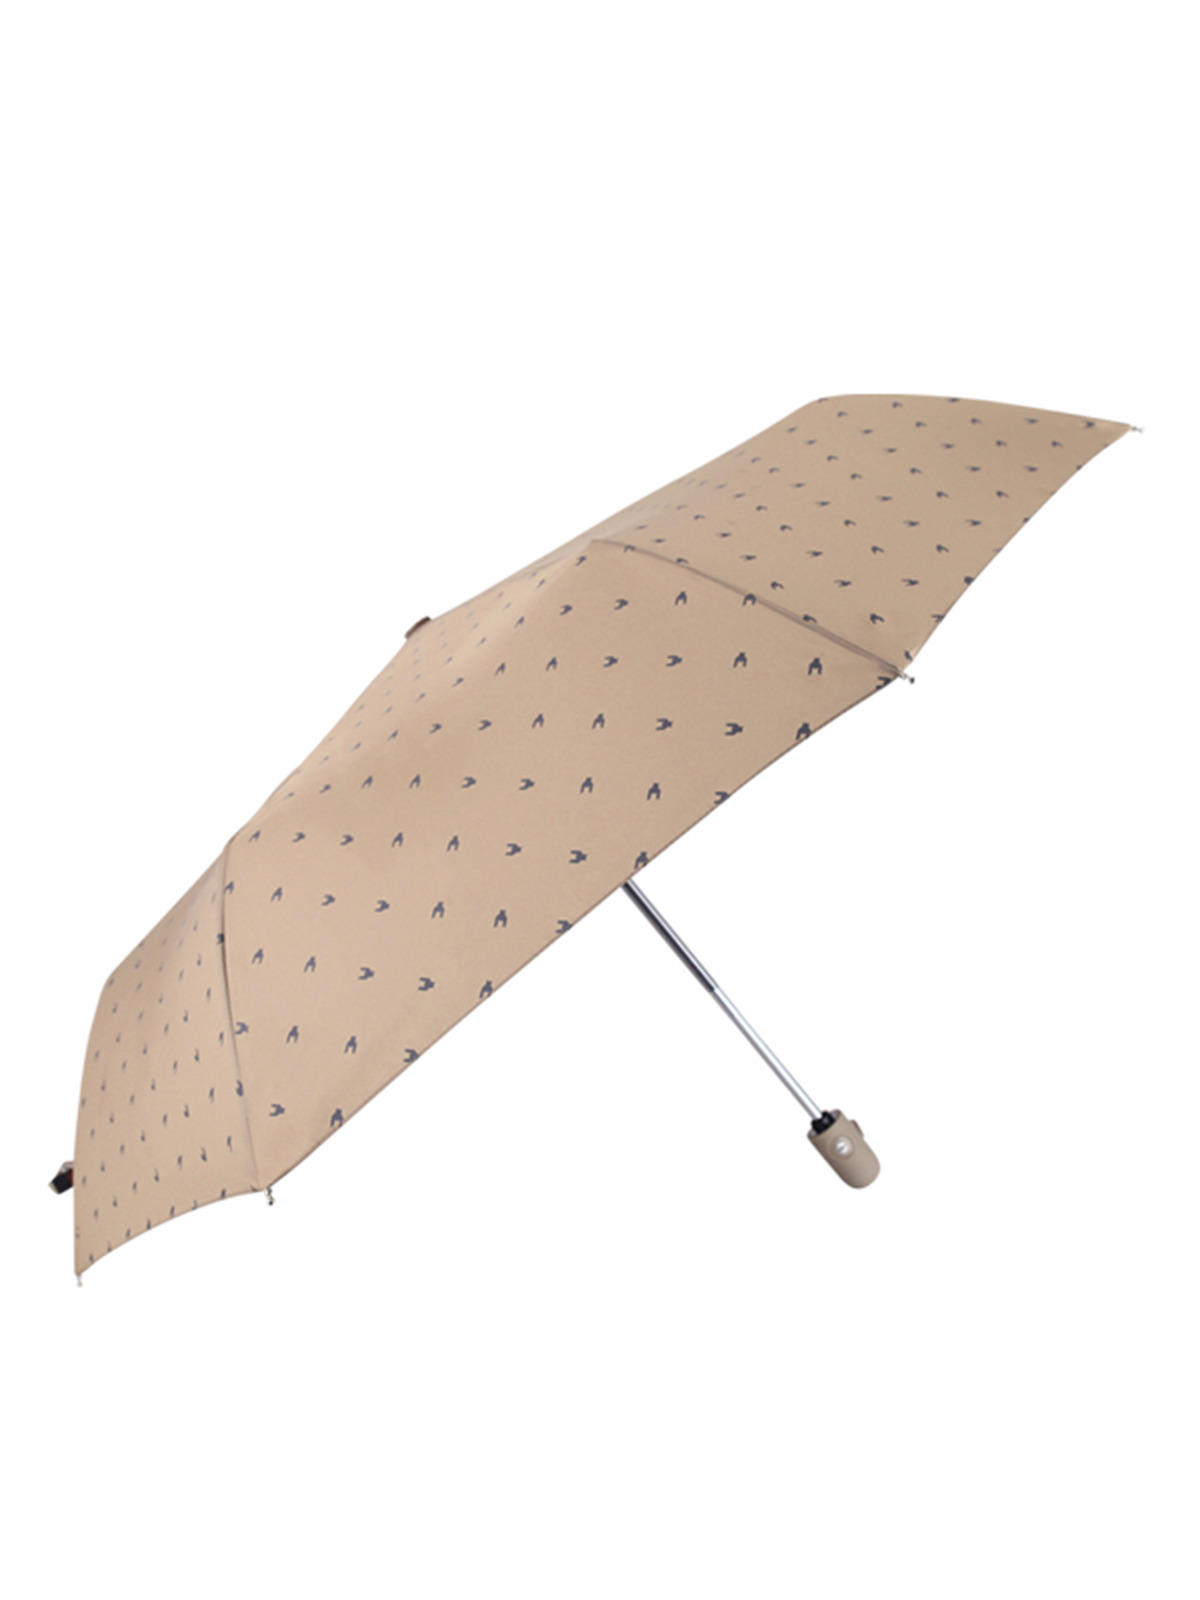 엘케이트 여성 3단우산 LDDR040 패턴 자동 우산 튼튼한 우산